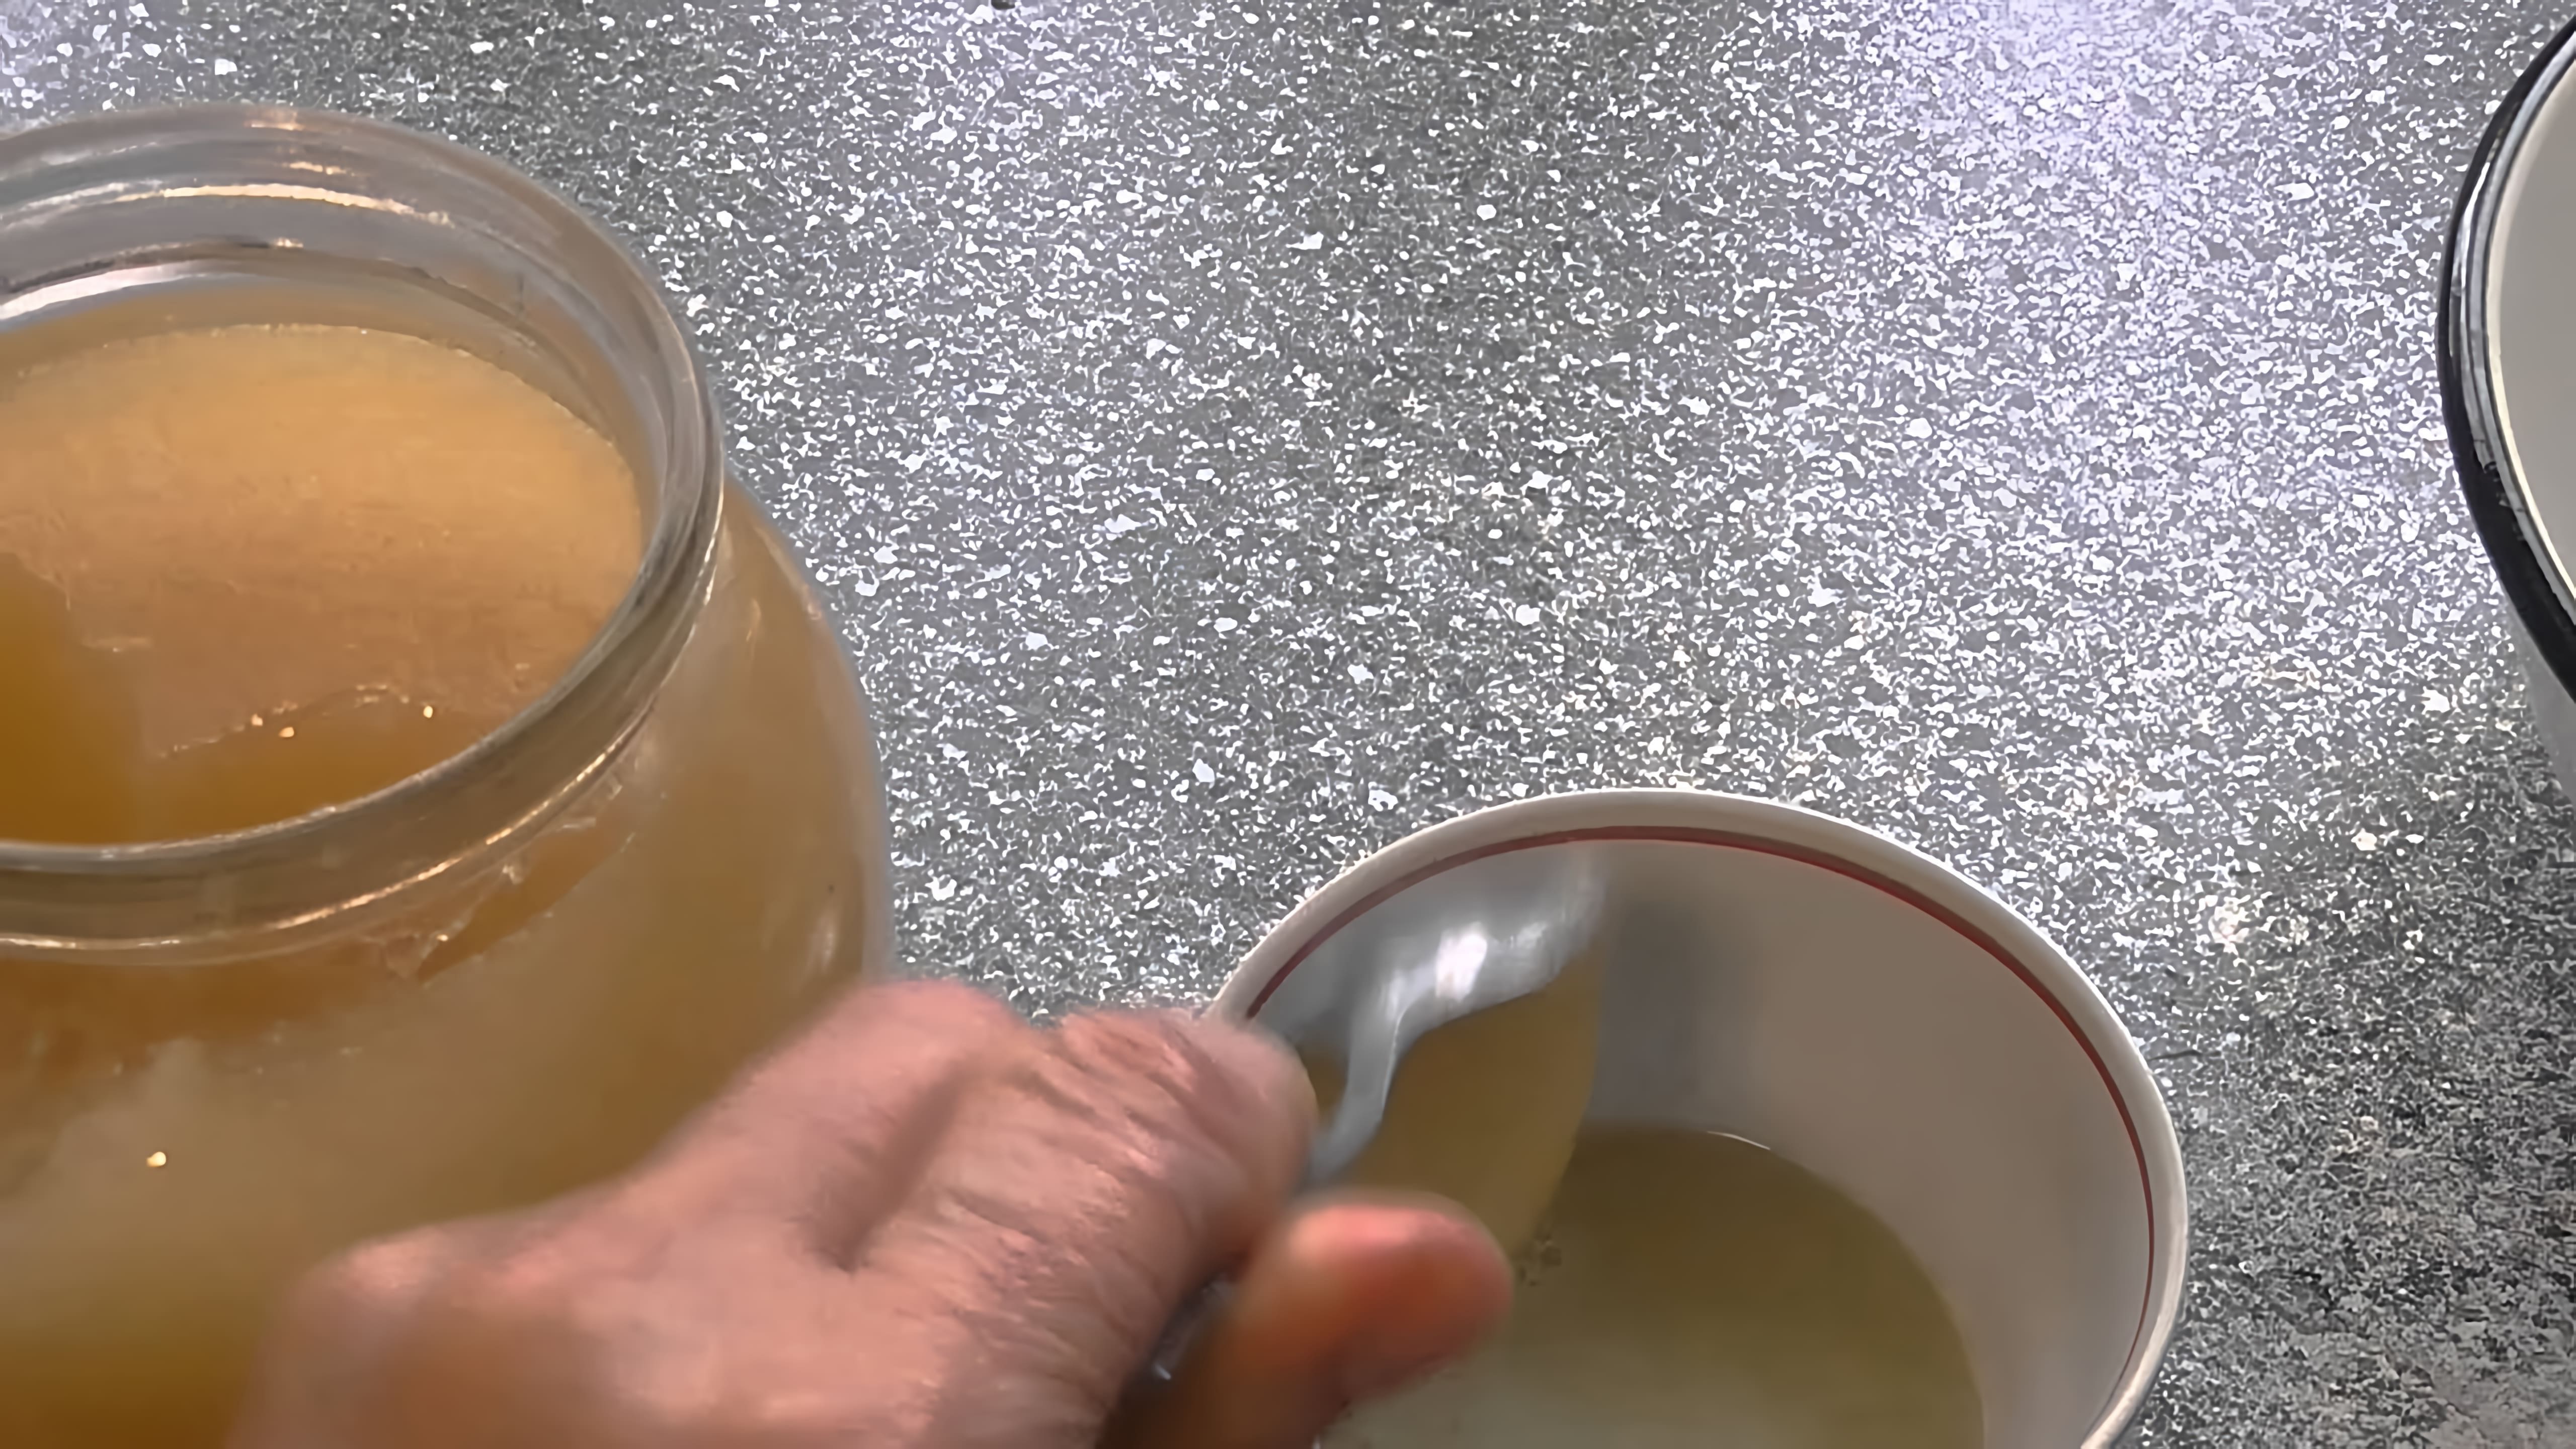 В данном видео демонстрируется рецепт натурального средства от кашля, которое можно приготовить в домашних условиях